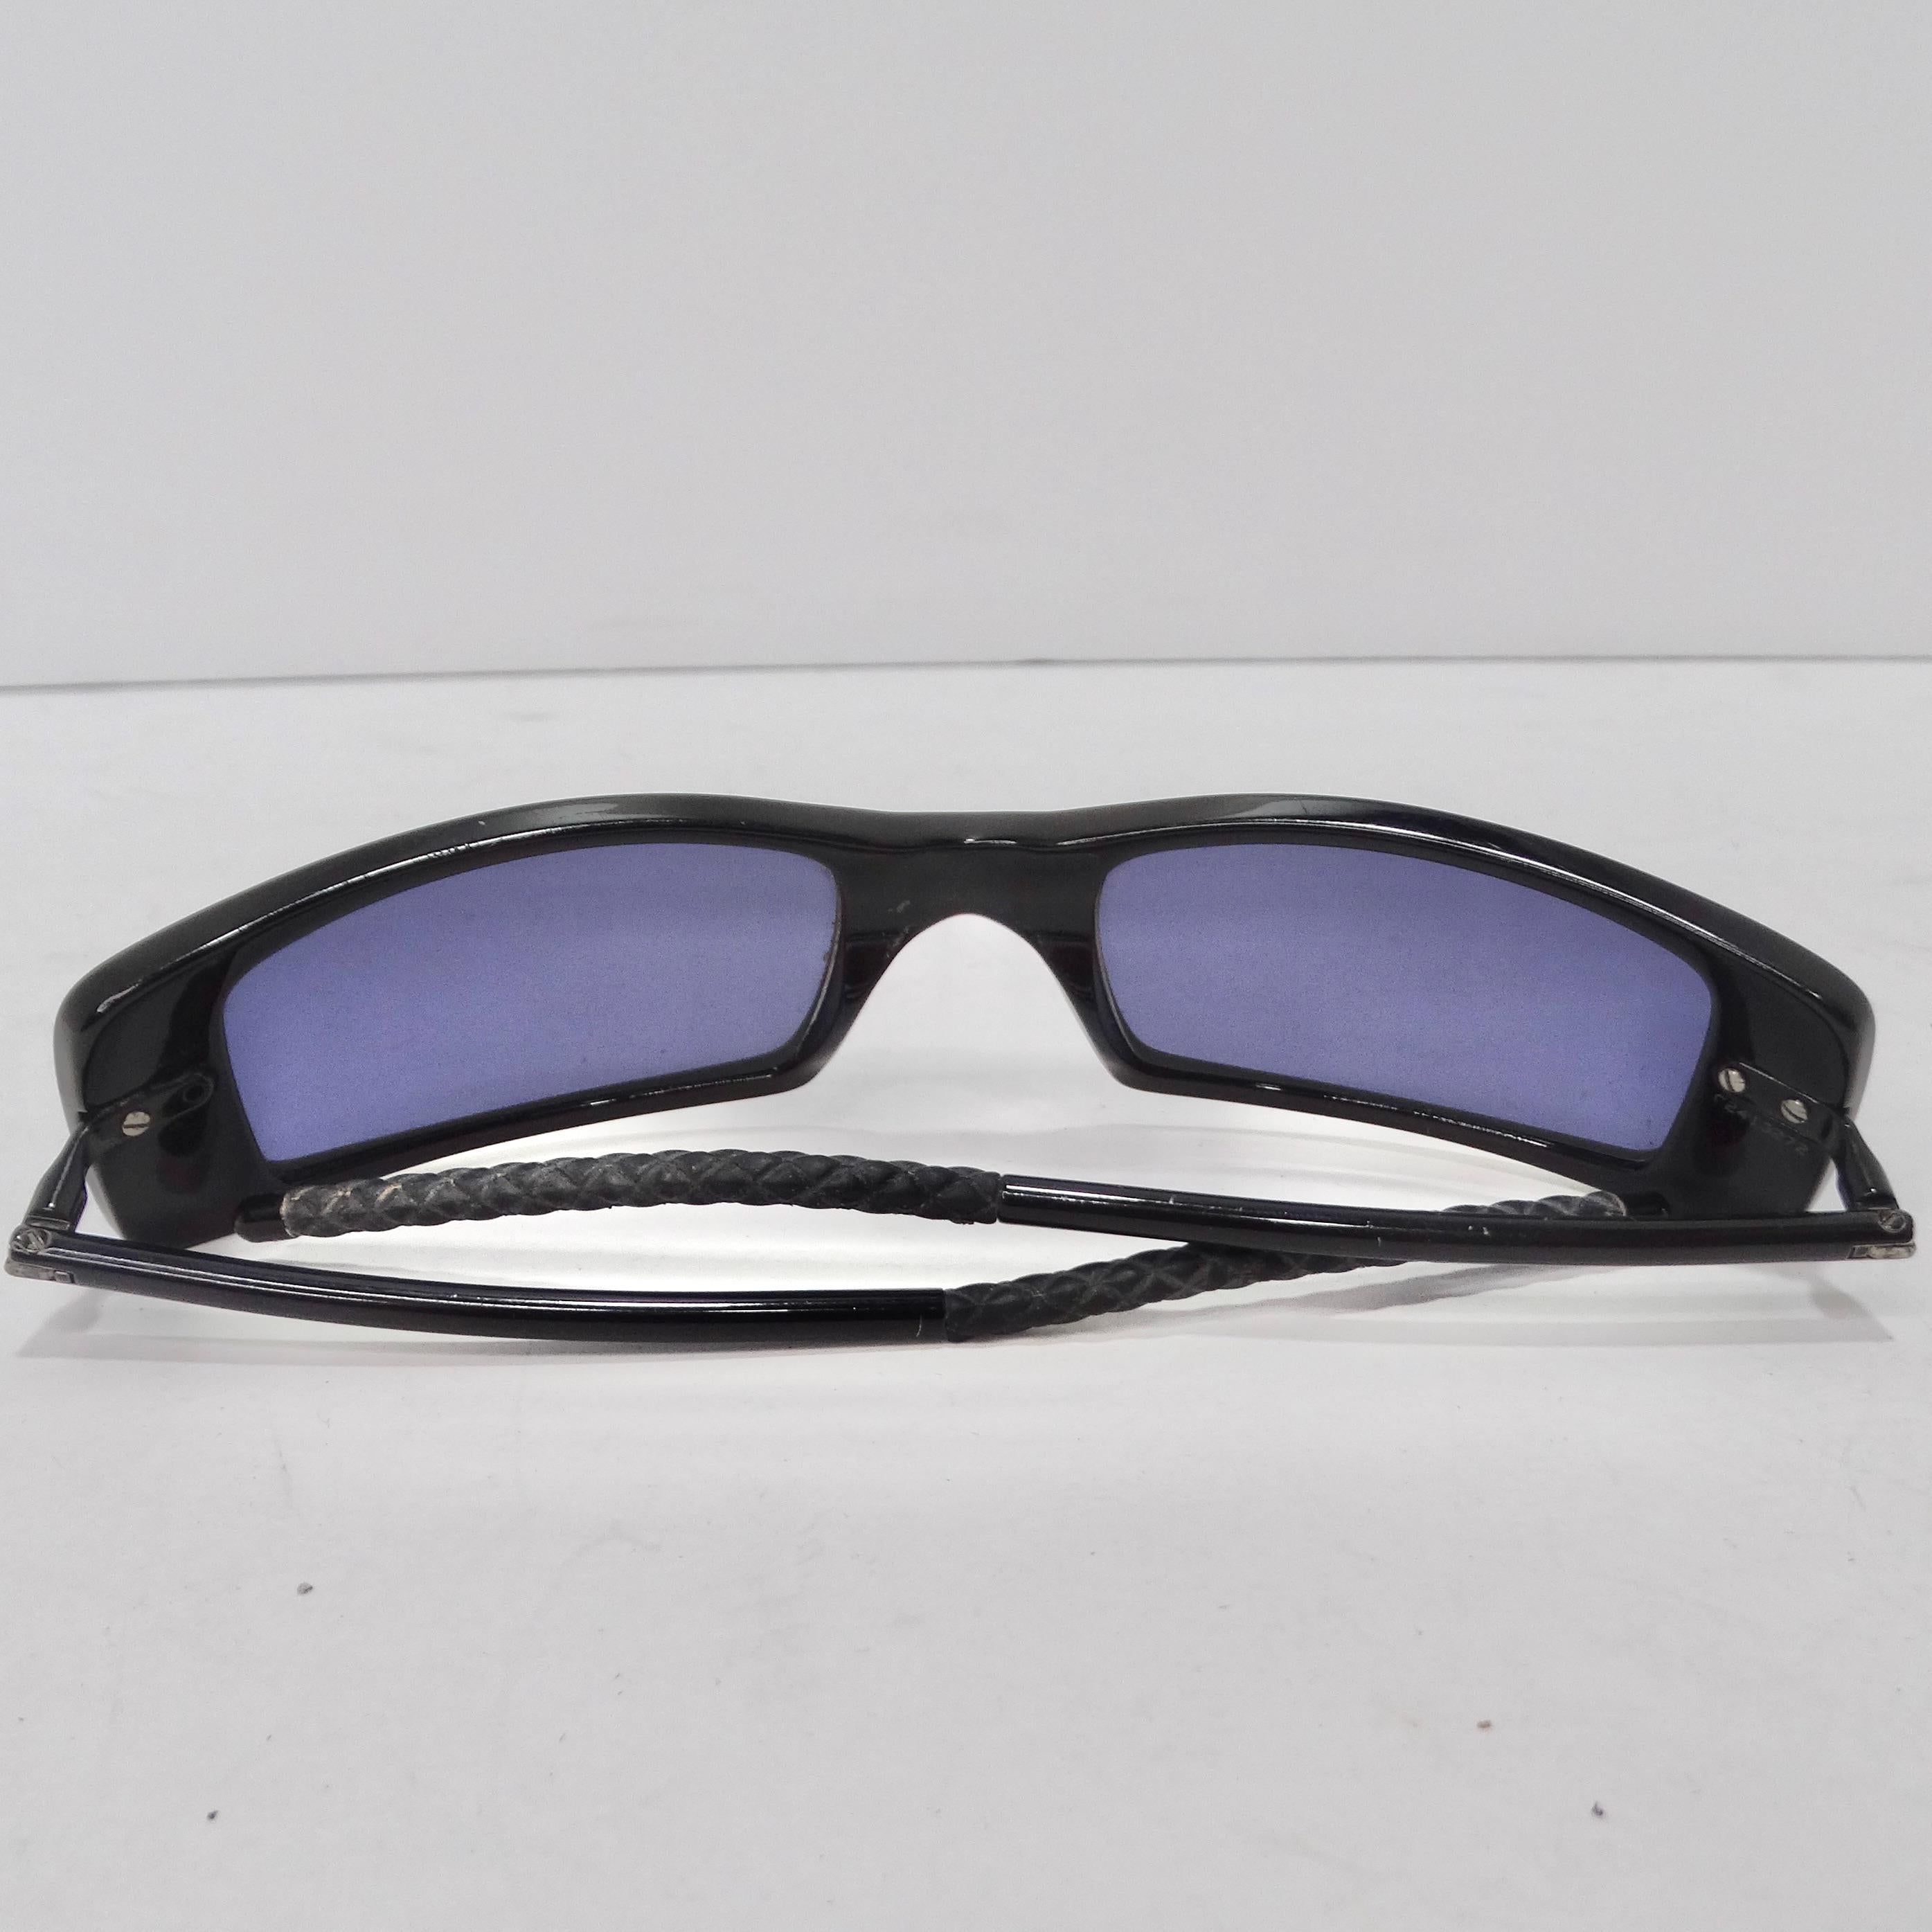 Voici les lunettes de soleil Chanel Black Y2K à monture carrée - un ajout classique et polyvalent à votre collection d'accessoires qui allie l'élégance intemporelle au style contemporain. Ces lunettes de soleil sont plus qu'une simple protection